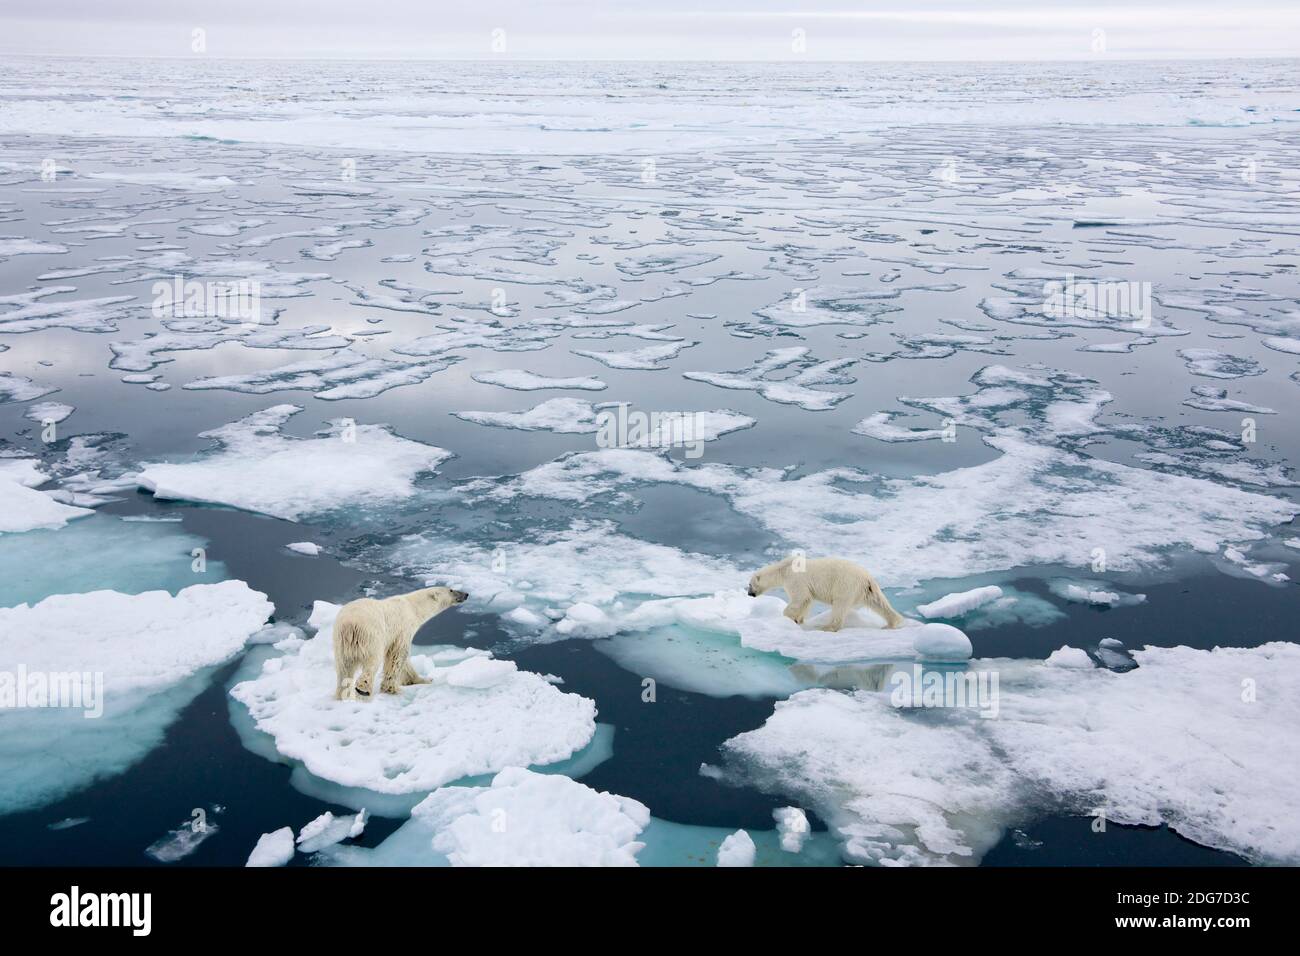 Deux ours polaires sur glace flottante dans l'océan Arctique, Spitsbergen, Norvège Banque D'Images